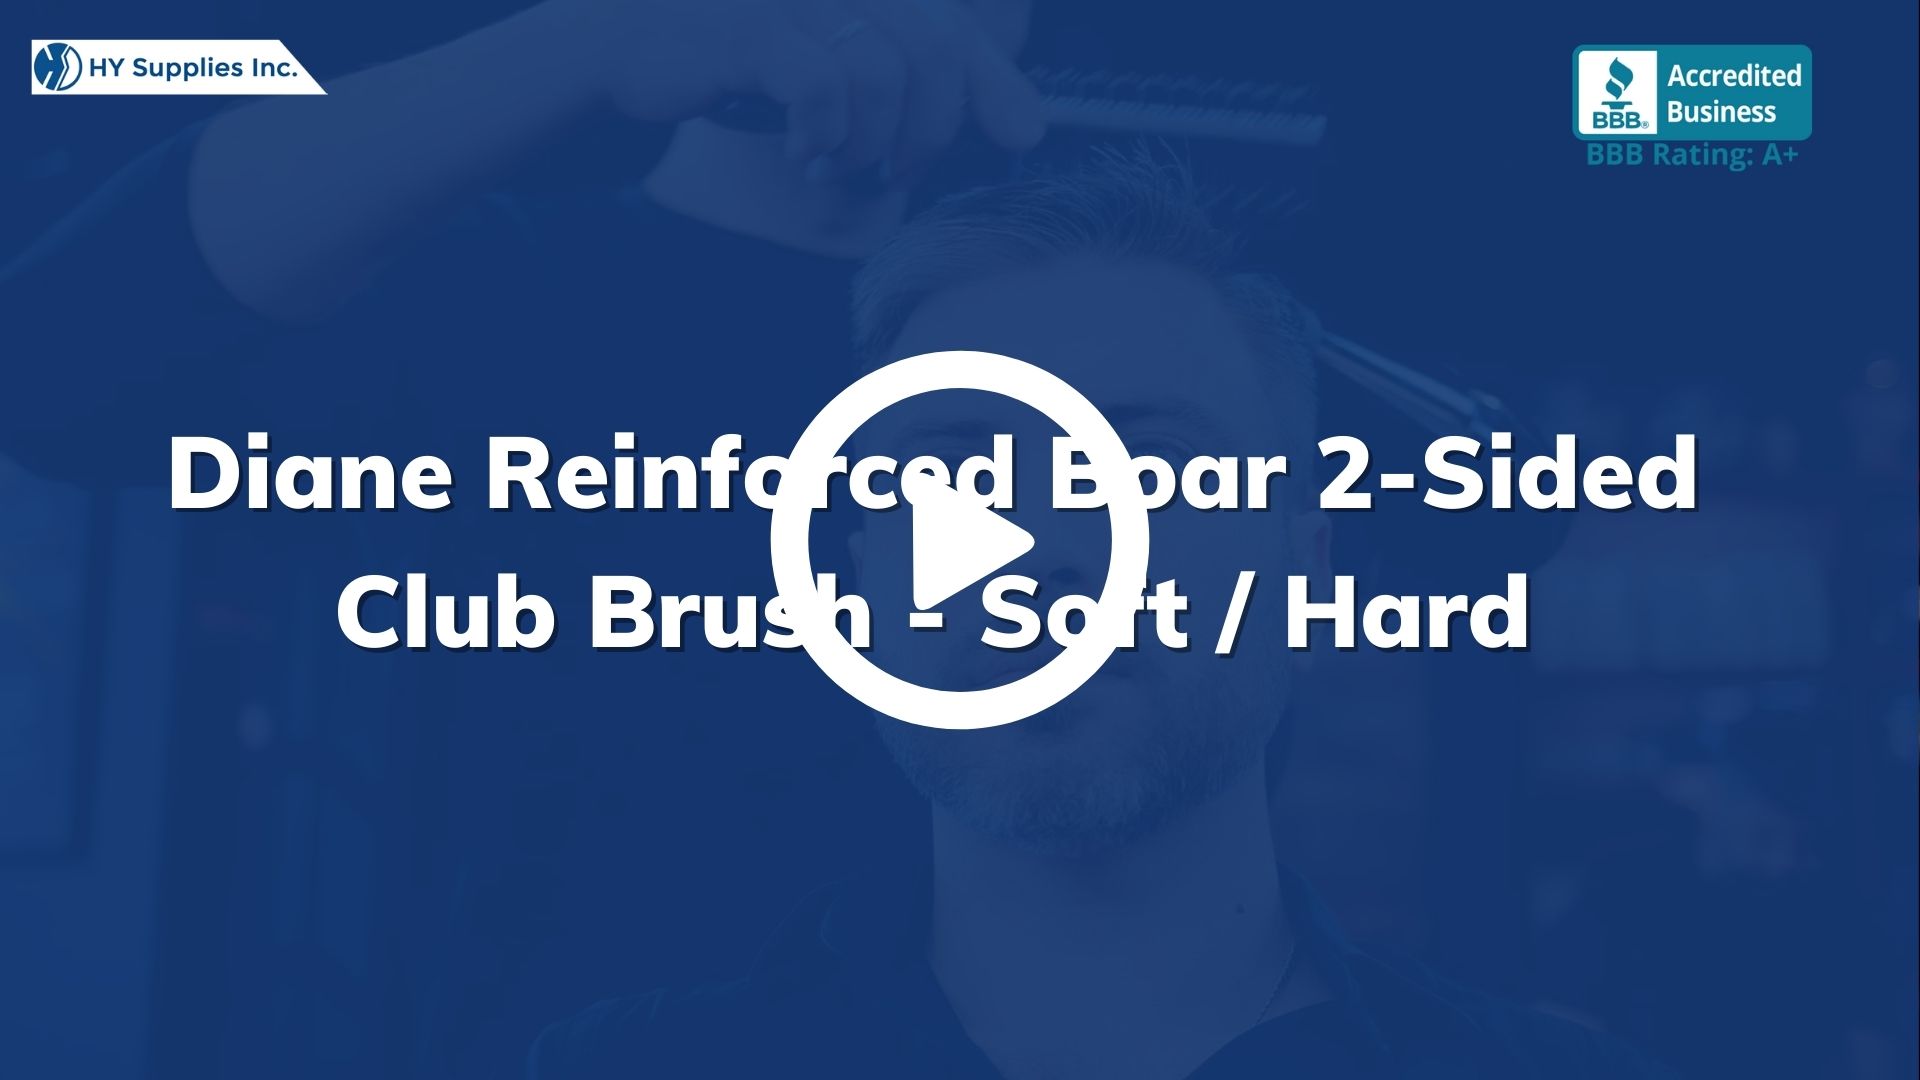 Diane Reinforced Boar 2-Sided Club Brush - Soft / Hard